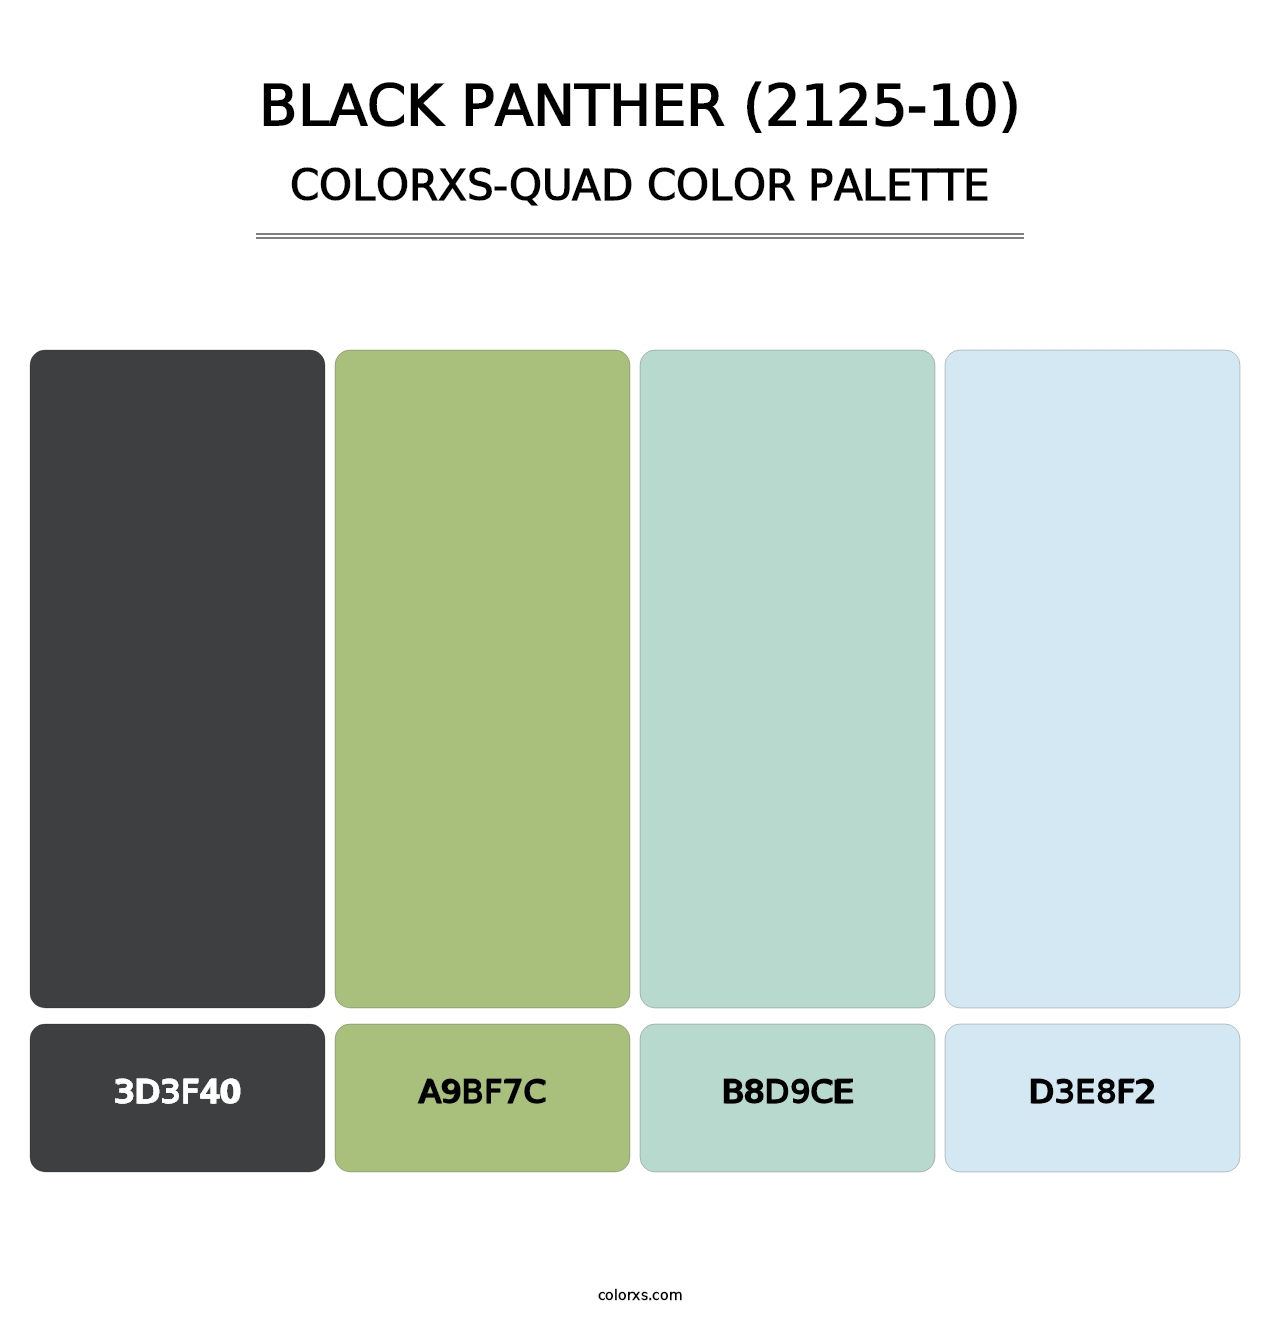 Black Panther (2125-10) - Colorxs Quad Palette